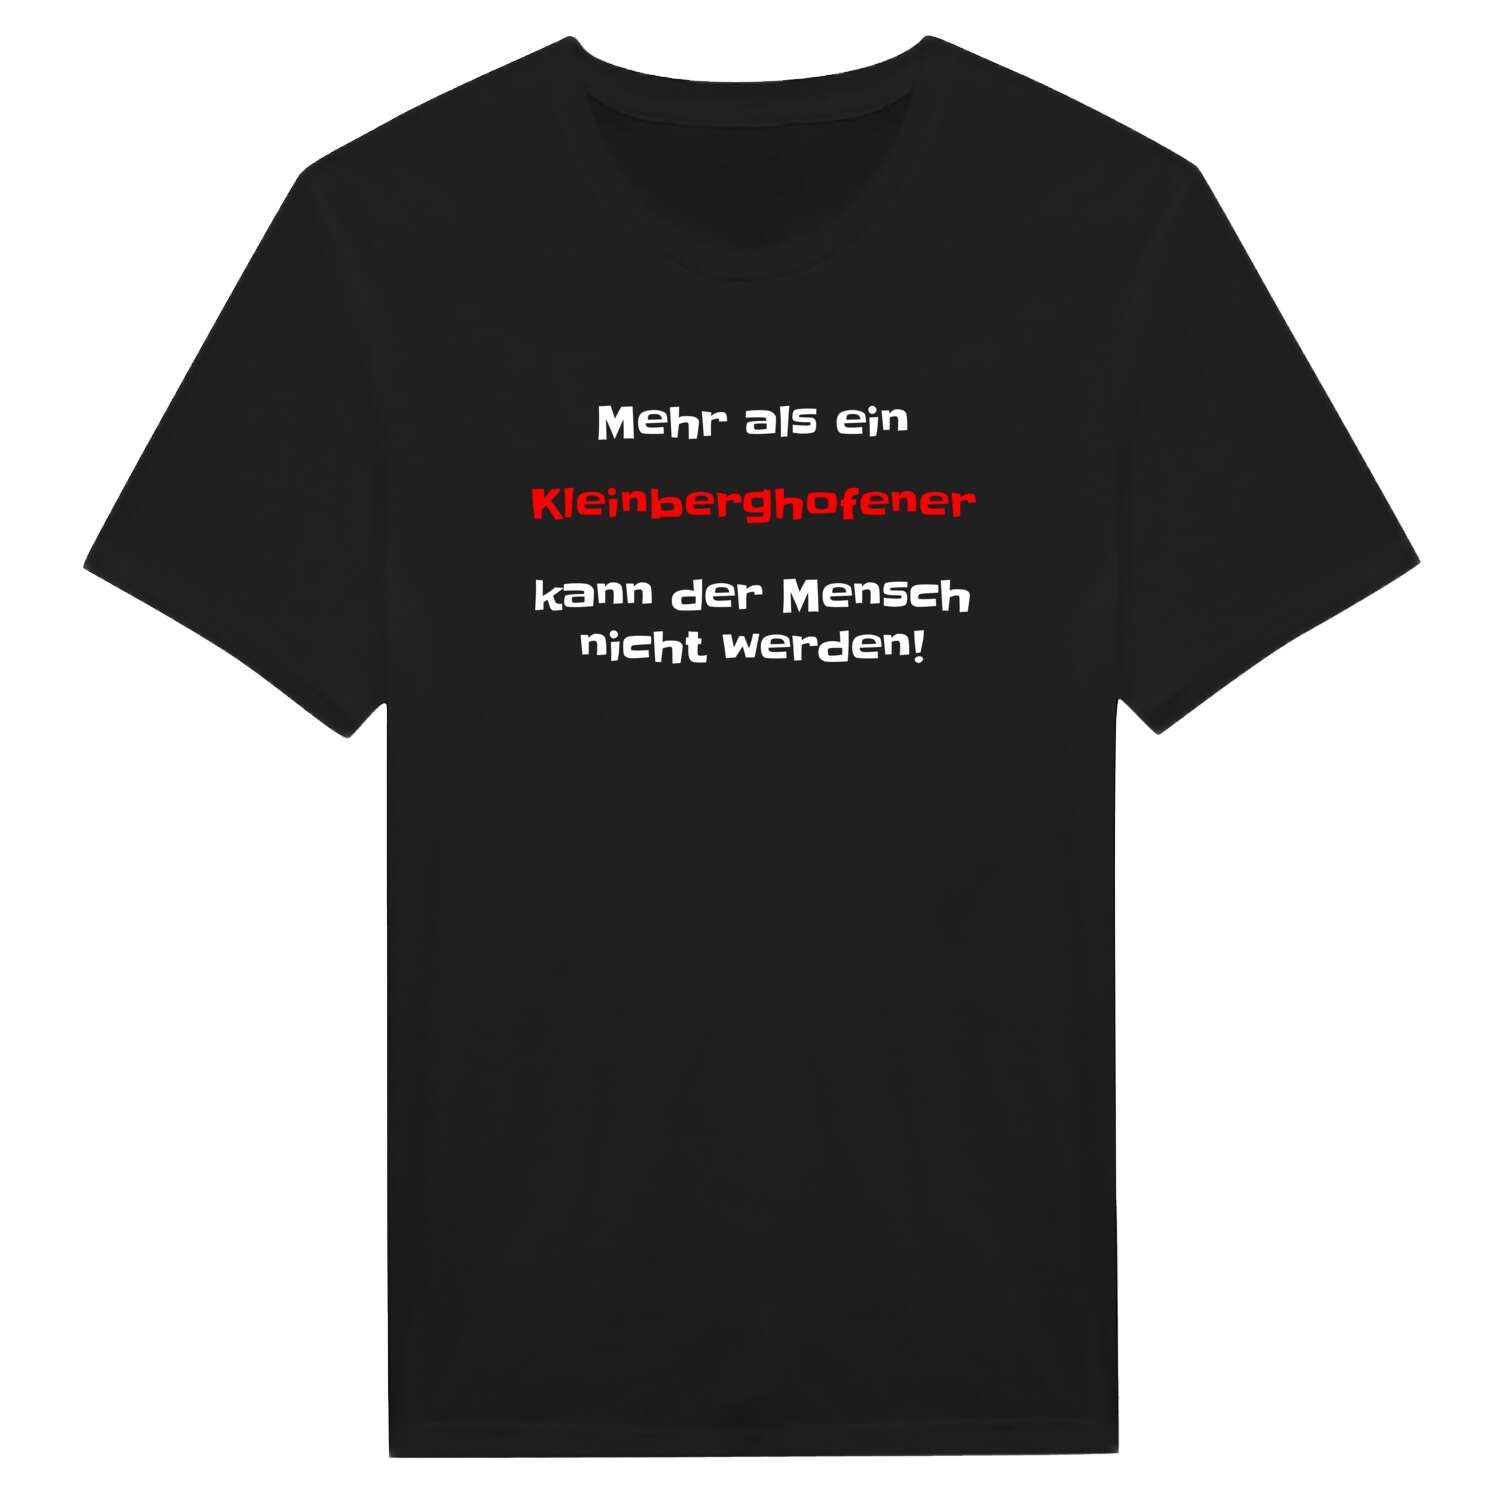 Kleinberghofen T-Shirt »Mehr als ein«